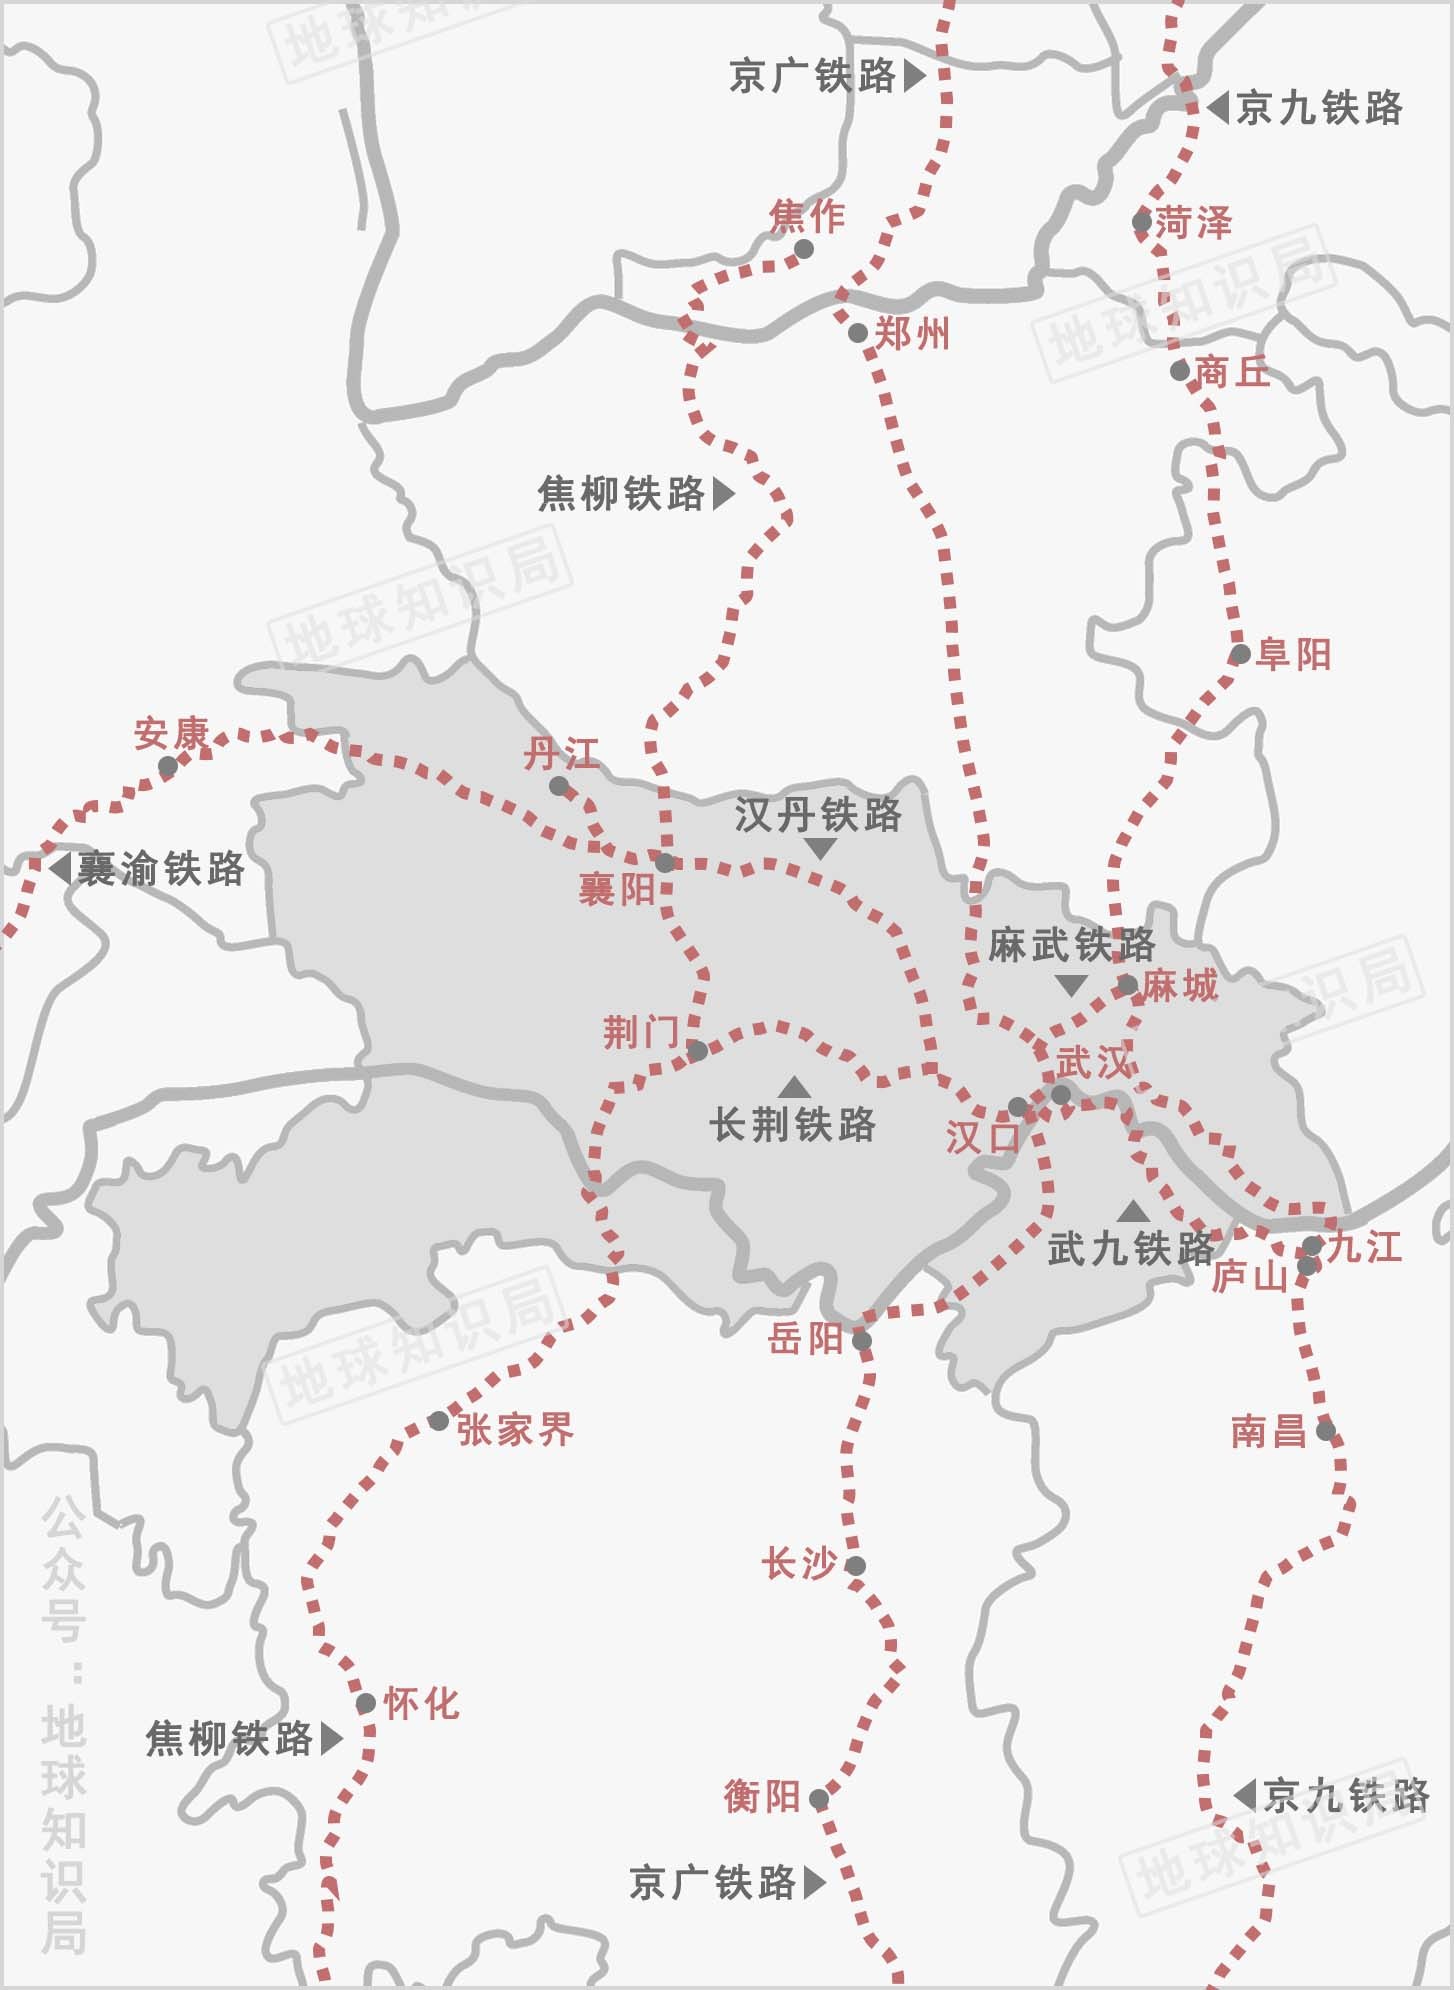 此后,长荆铁路,襄渝铁路,汉丹铁路,武九铁路,麻武铁路,京九铁路,焦柳